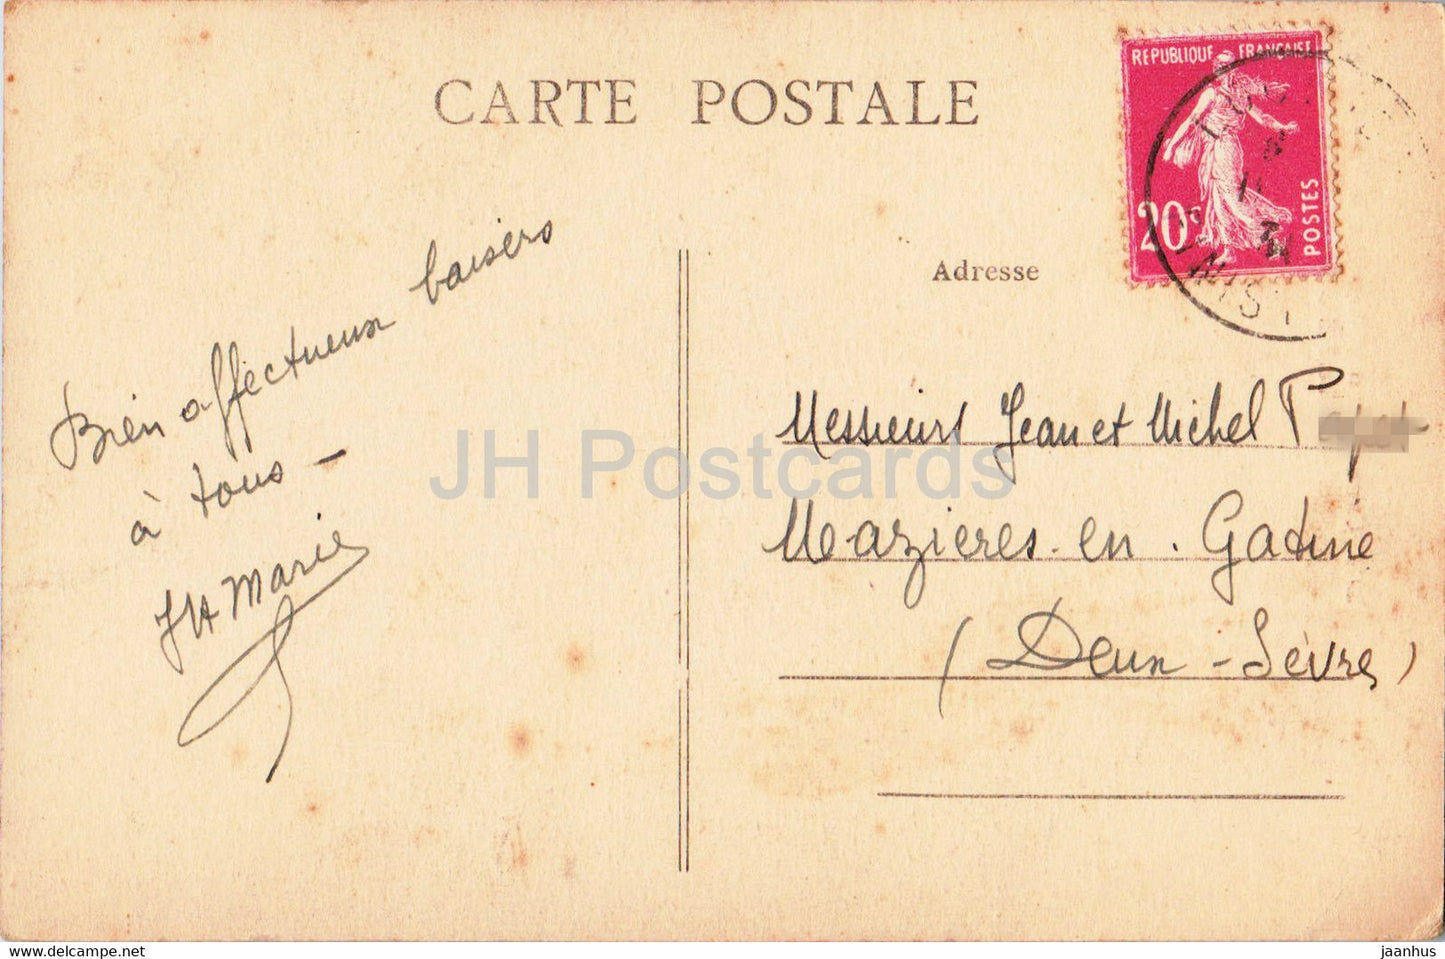 Concarneau - Entree de la Ville Close Le Beffro - 3976 - old postcard - France - used